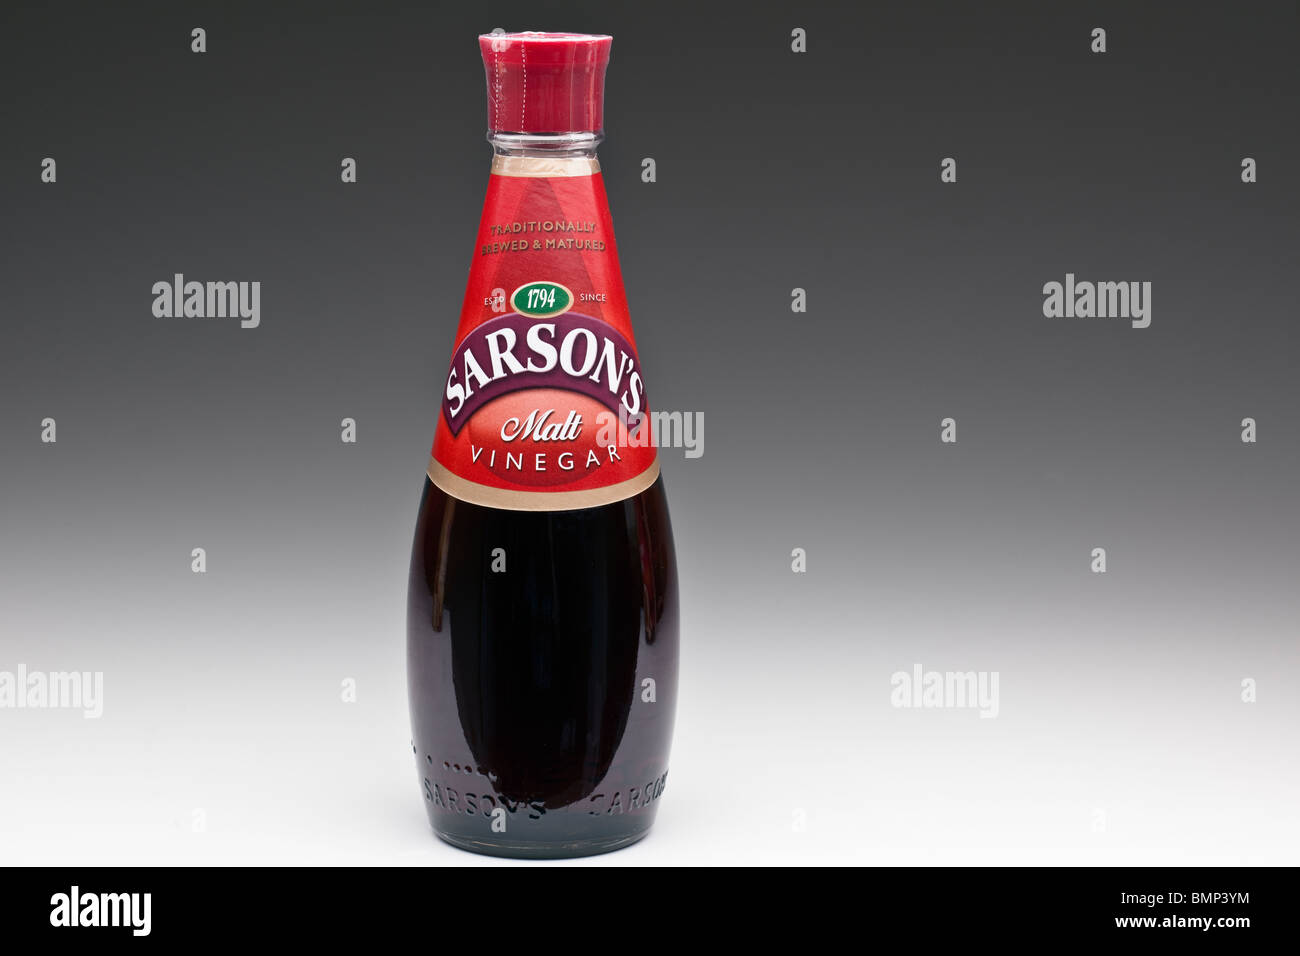 Bottle of Sarson's Malt Vinegar Stock Photo